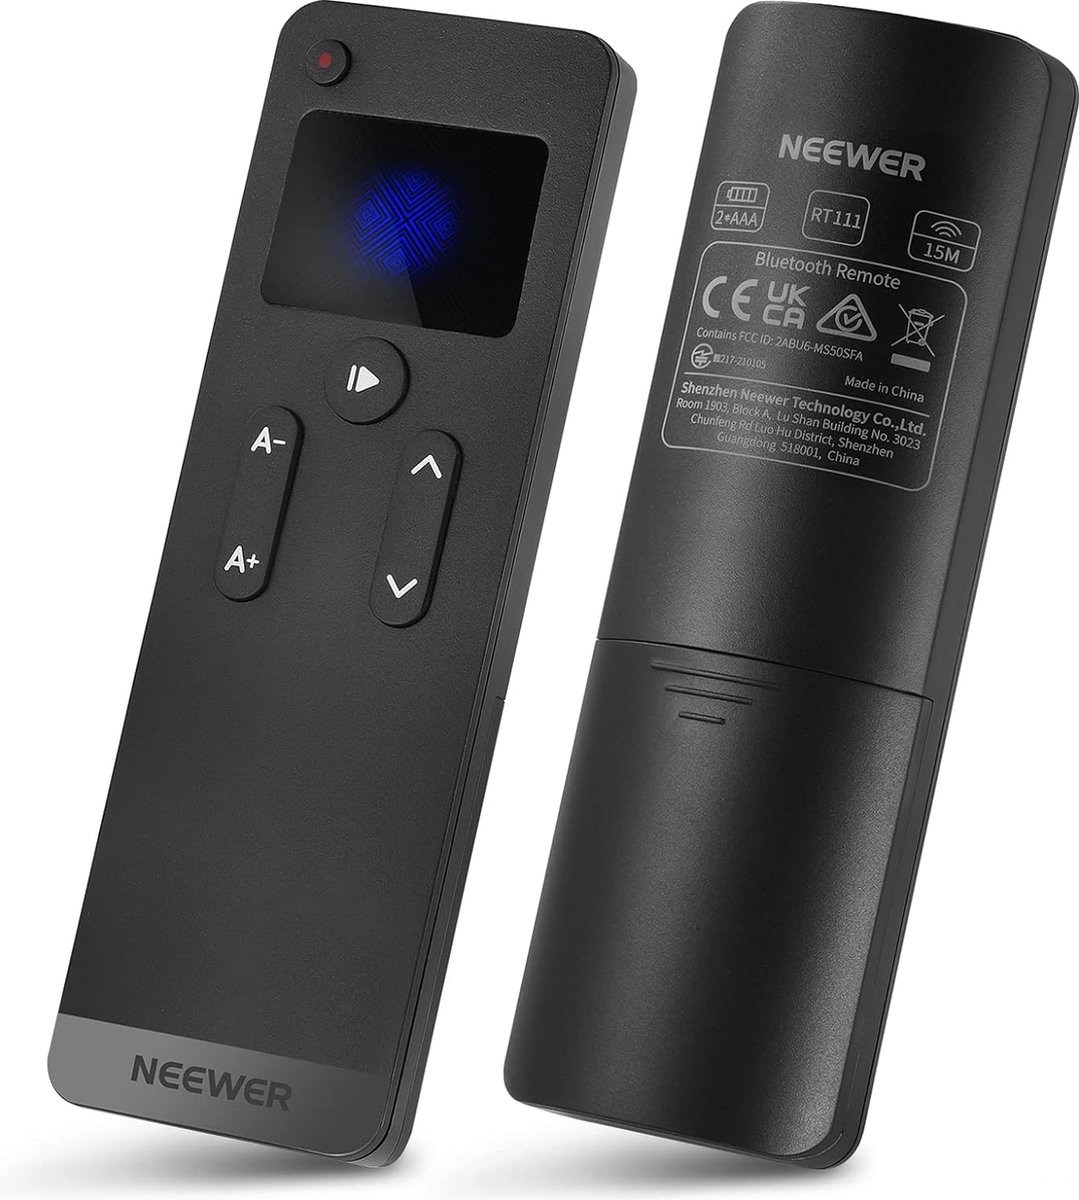 Neewer® - Afstandsbediening RT111 voor NEEWER Teleprompter app - Directe Bluetooth-verbinding en dempknop, compatibel met iOS en Android smartphones en tablets voor X1 Pro, X14 Pro, X17 en meer